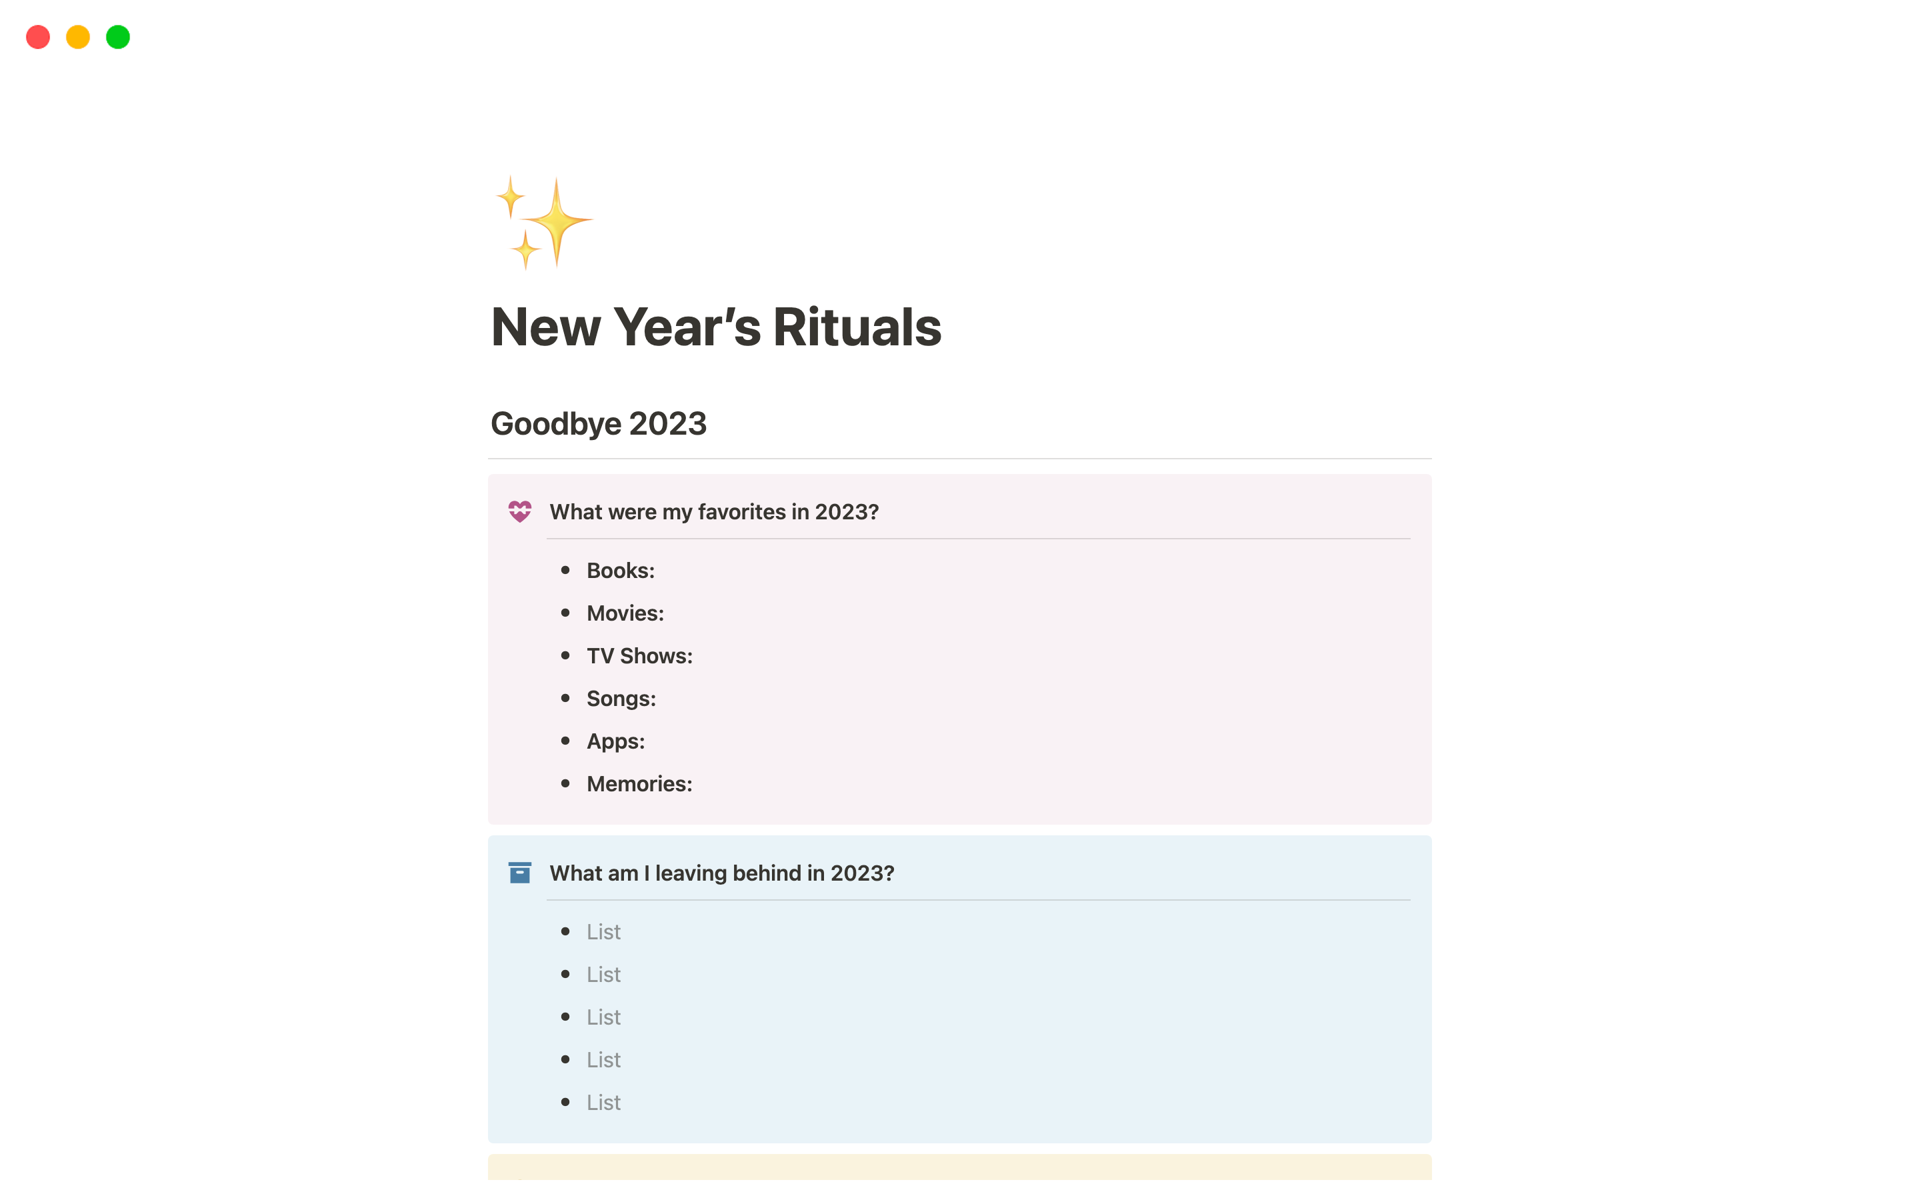 Uma prévia do modelo para New Year’s Rituals